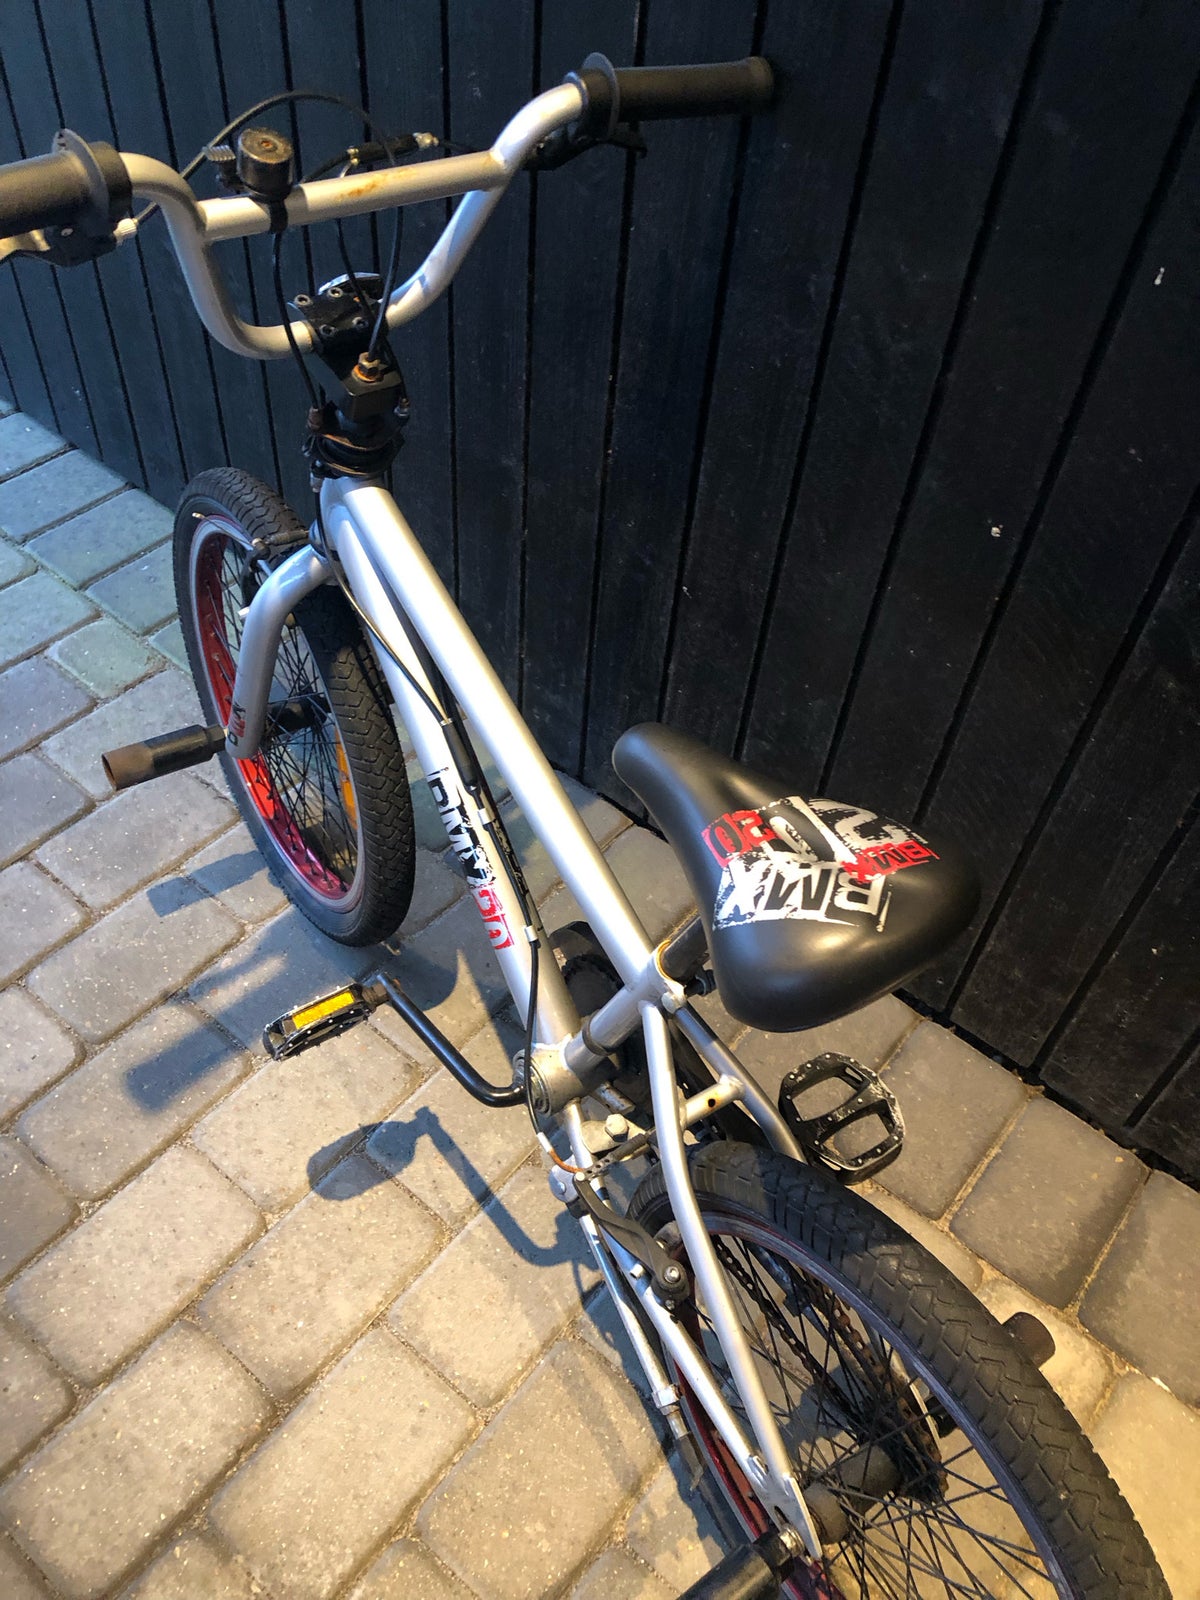 Unisex børnecykel, BMX